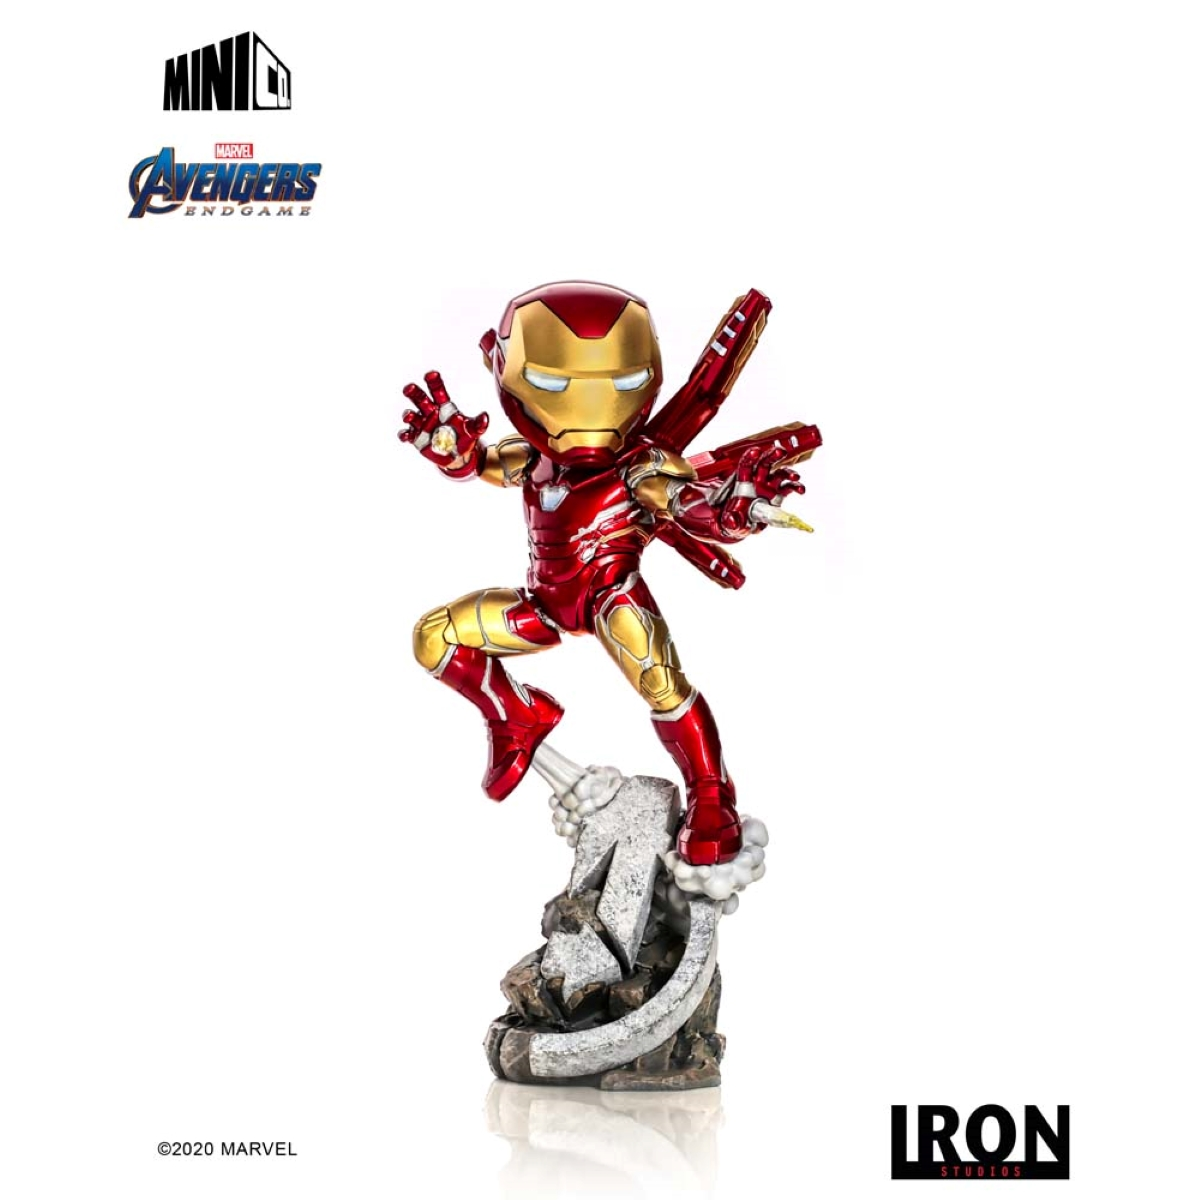 IRON STUDIOS Iron Figur figur Avengers: Minico & - Endgame Man Iron Studios